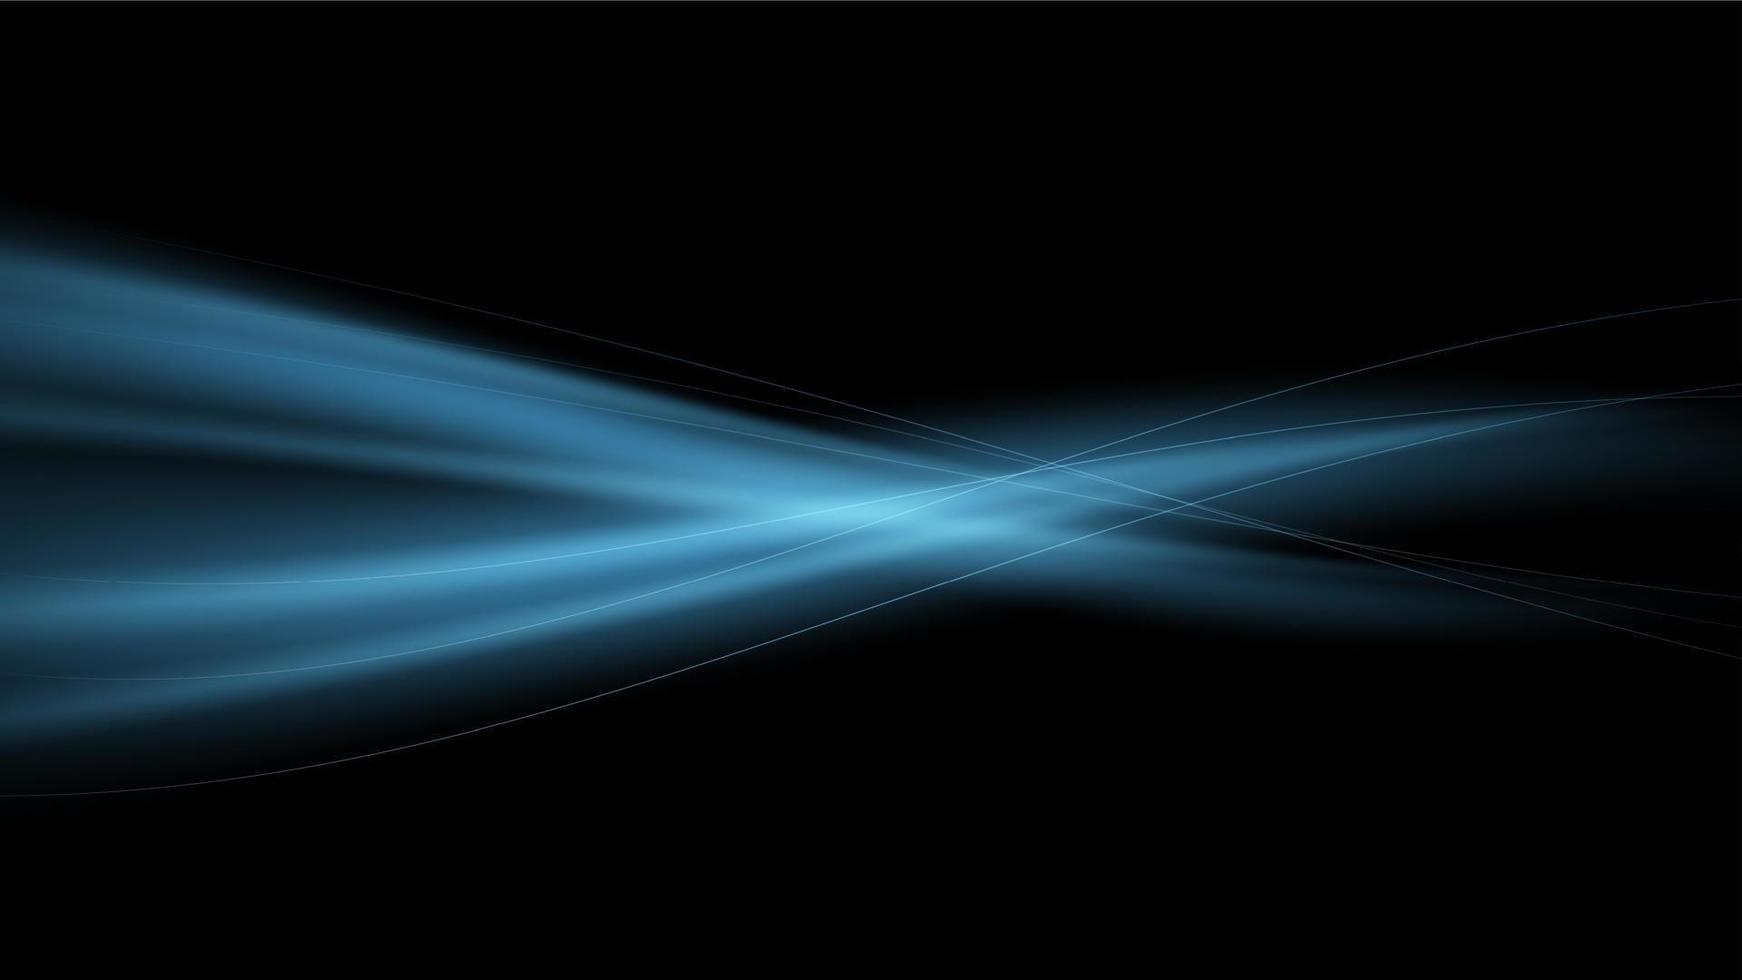 abstrait vectoriel avec des courants d'air bleus sur fond noir. flamme magique bleue. onde lumineuse.